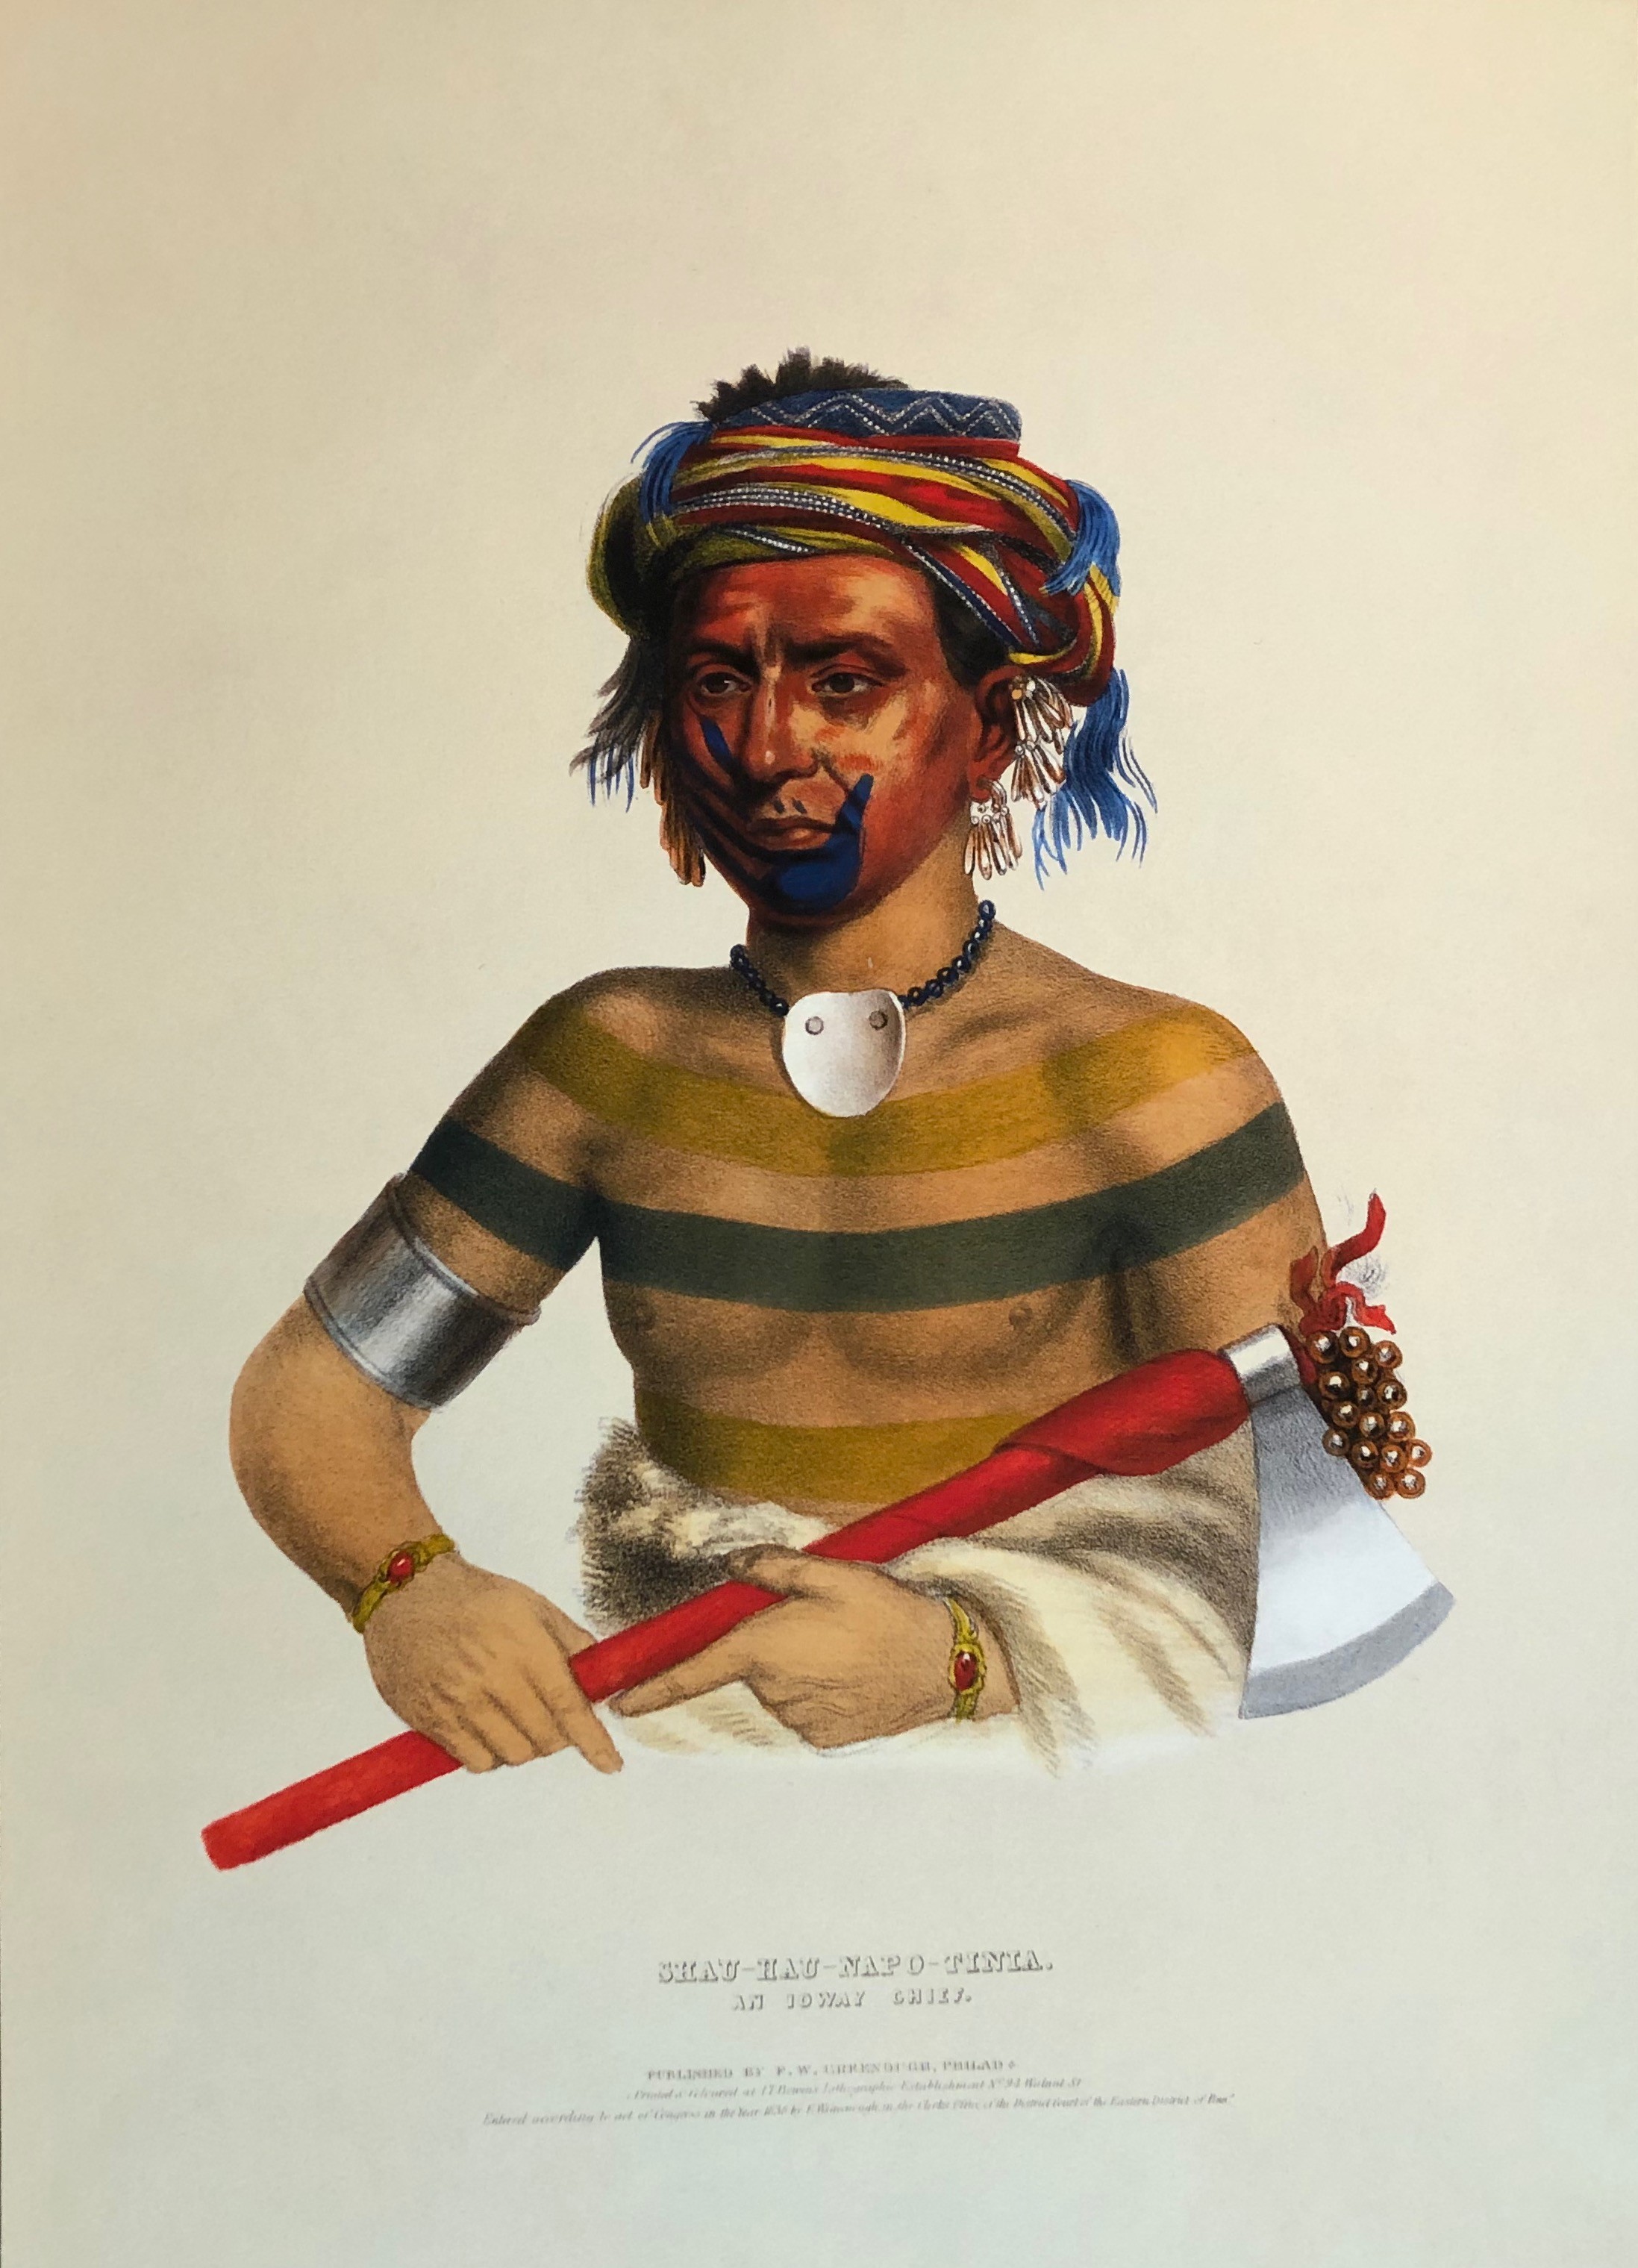 Chau-Hau-Napo-Tinia, An Ioway Chief